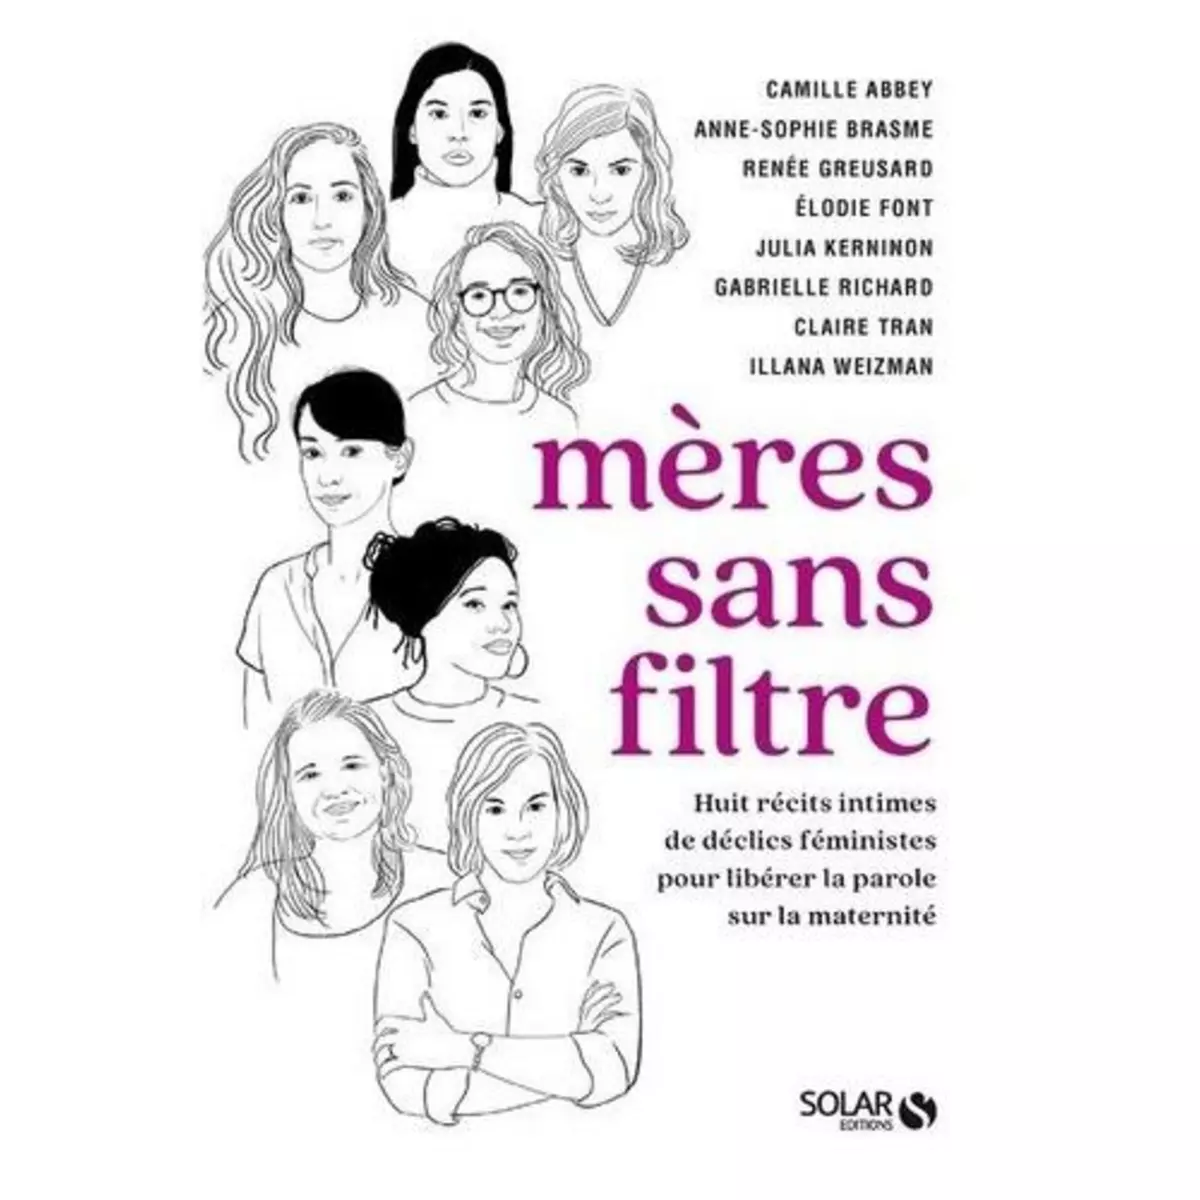  MERES SANS FILTRE. 8 RECITS INTIMES DE DECLICS FEMINISTES POUR LIBERER LA PAROLE SUR LA MATERNITE, Richard Gabrielle